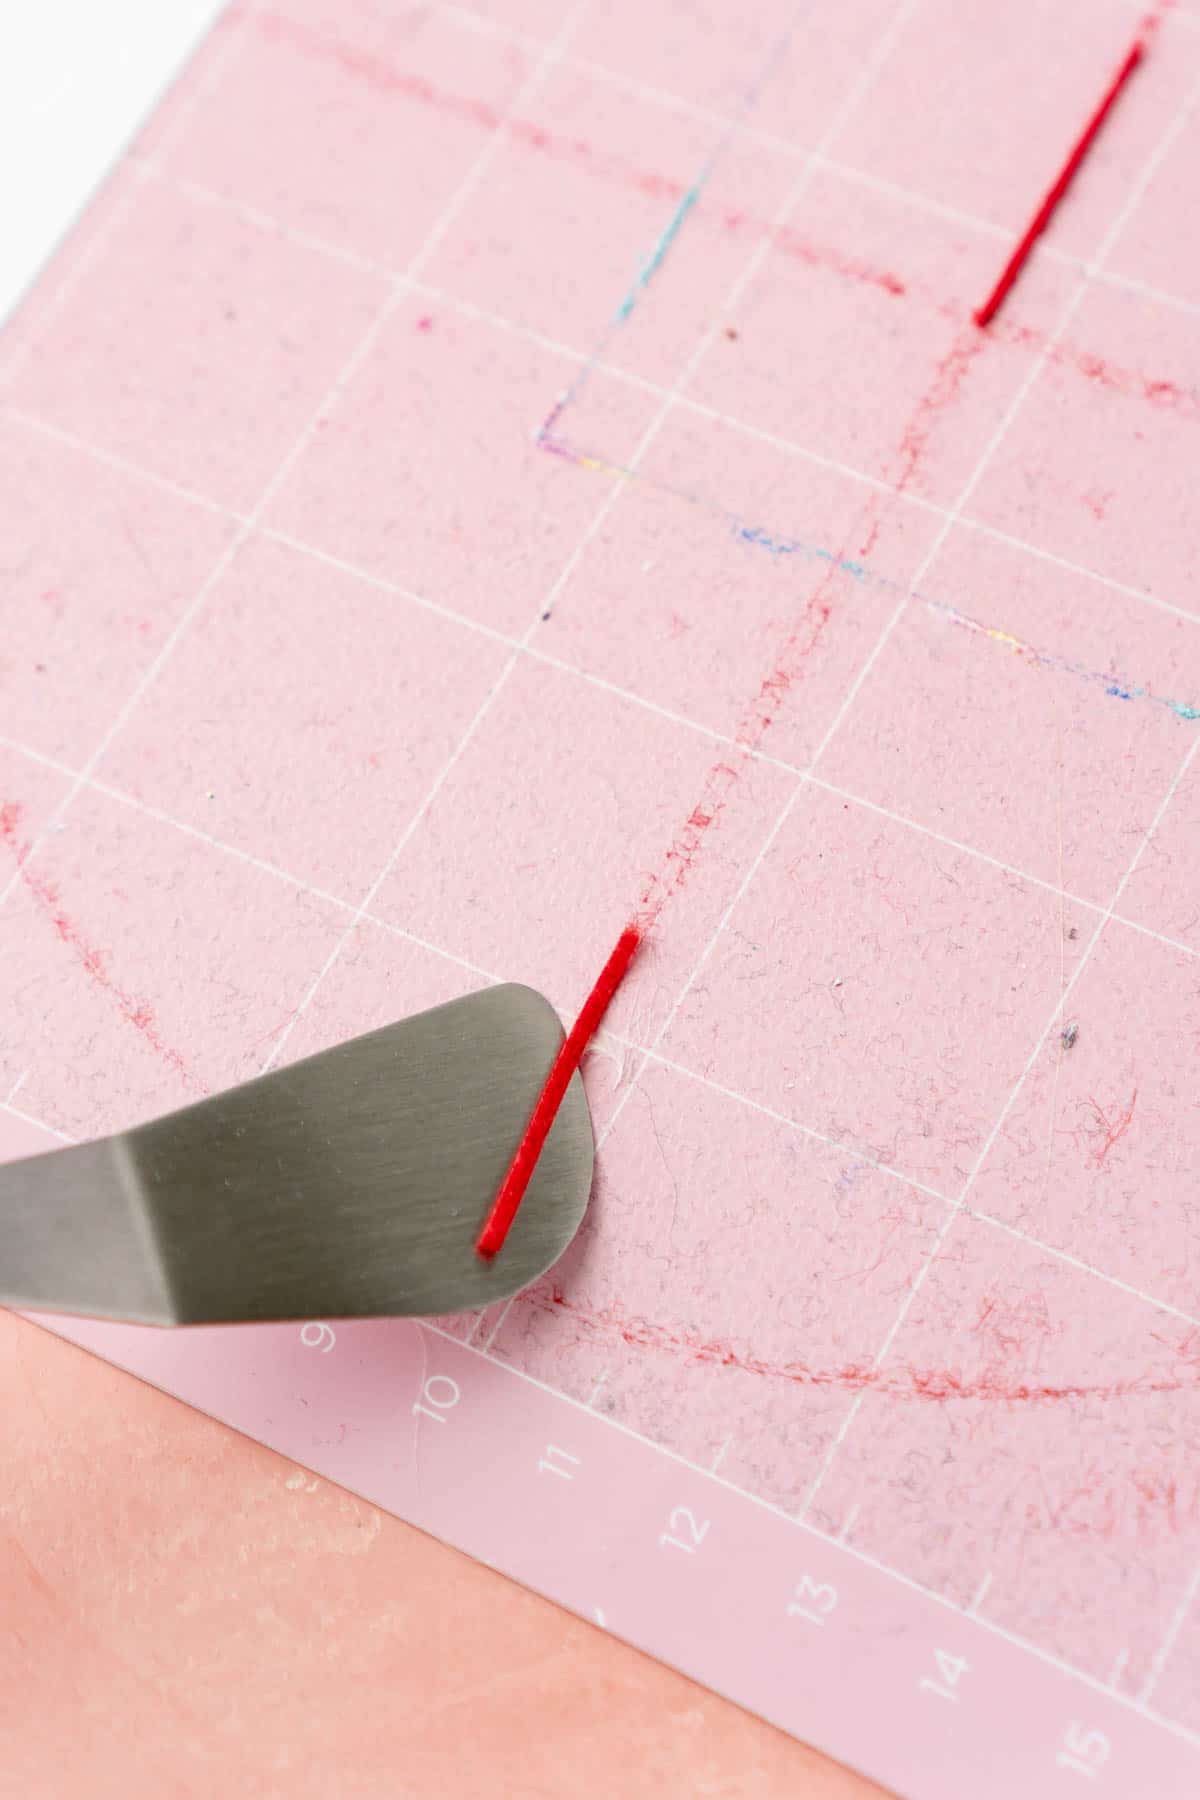 Cricut spatula scraping off excess felt from a pink mat